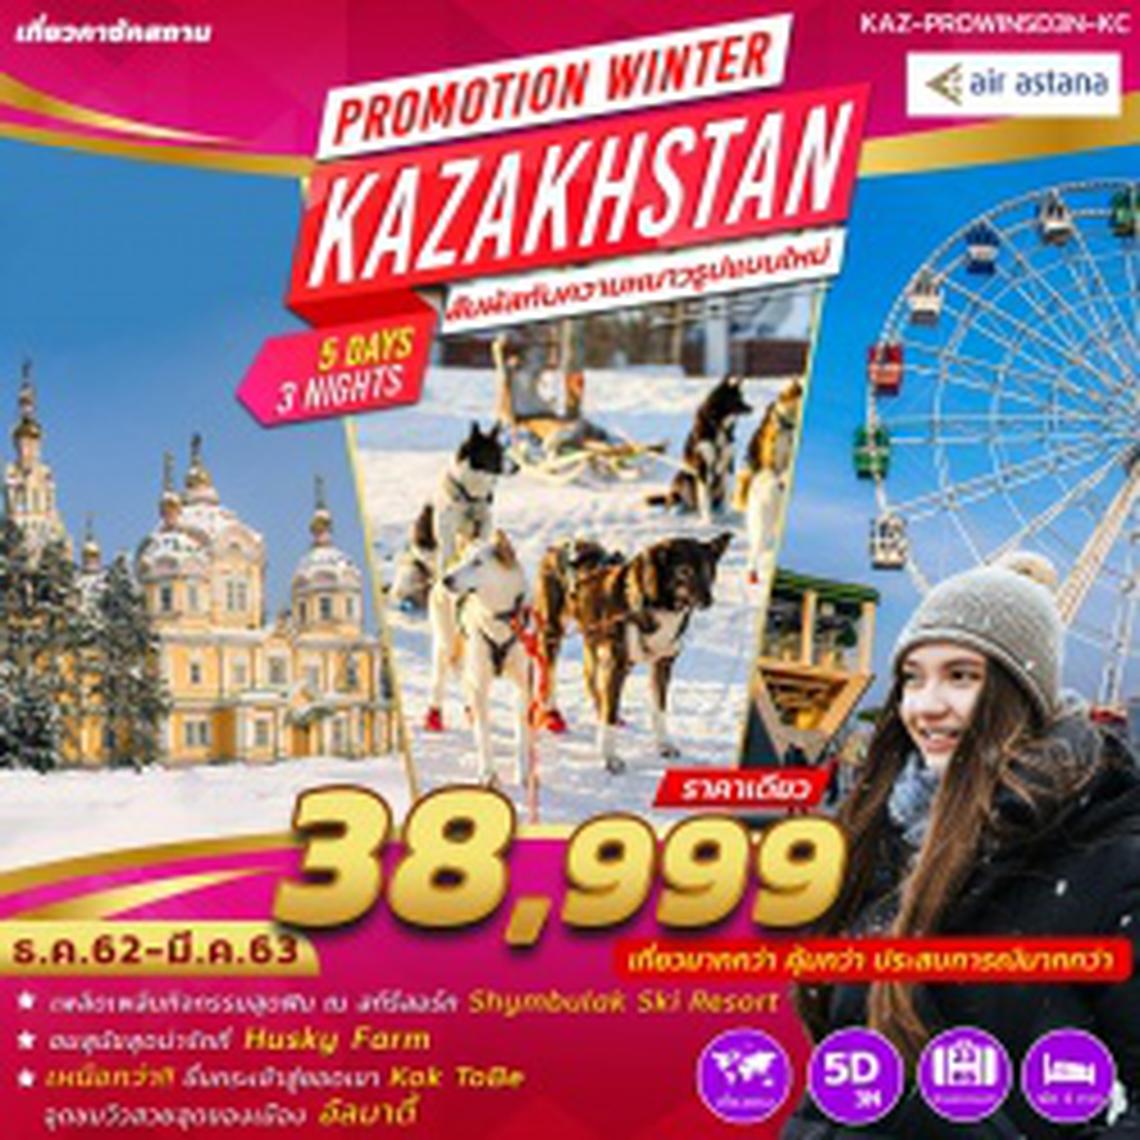 (KAZ-PROWIN5D3N-KC) PROMOTION WINTER KAZAKHSTAN 5 DAYS 3 NIGHTS KC